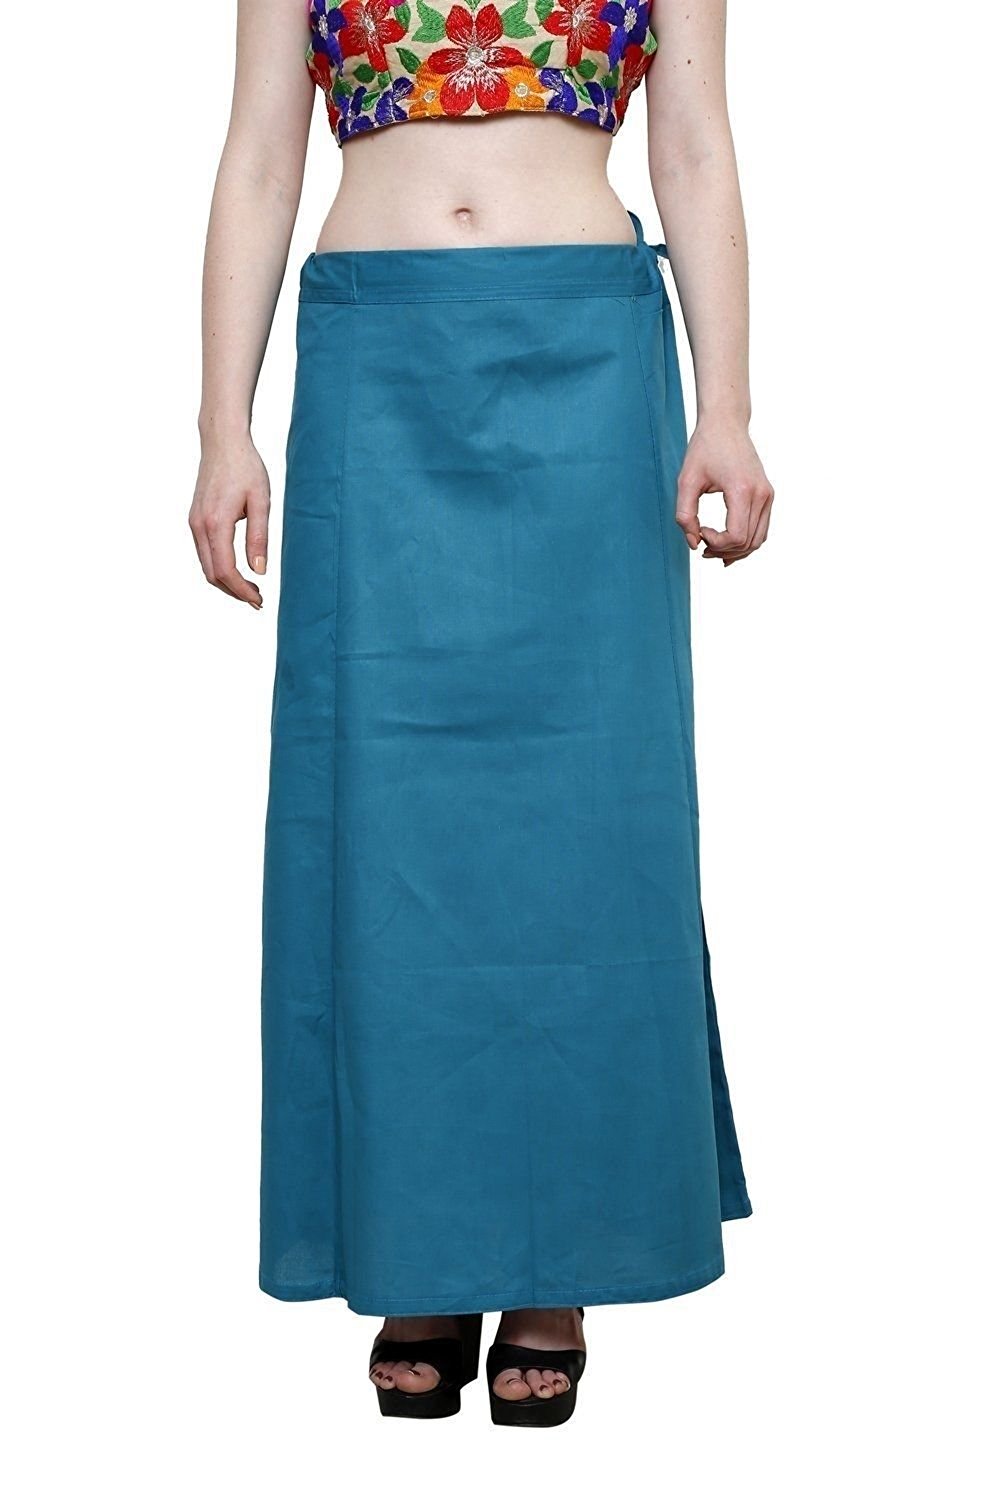 Buy Stylesindia Women's Cotton Readymade Indian Skirt Saree petticoats ...